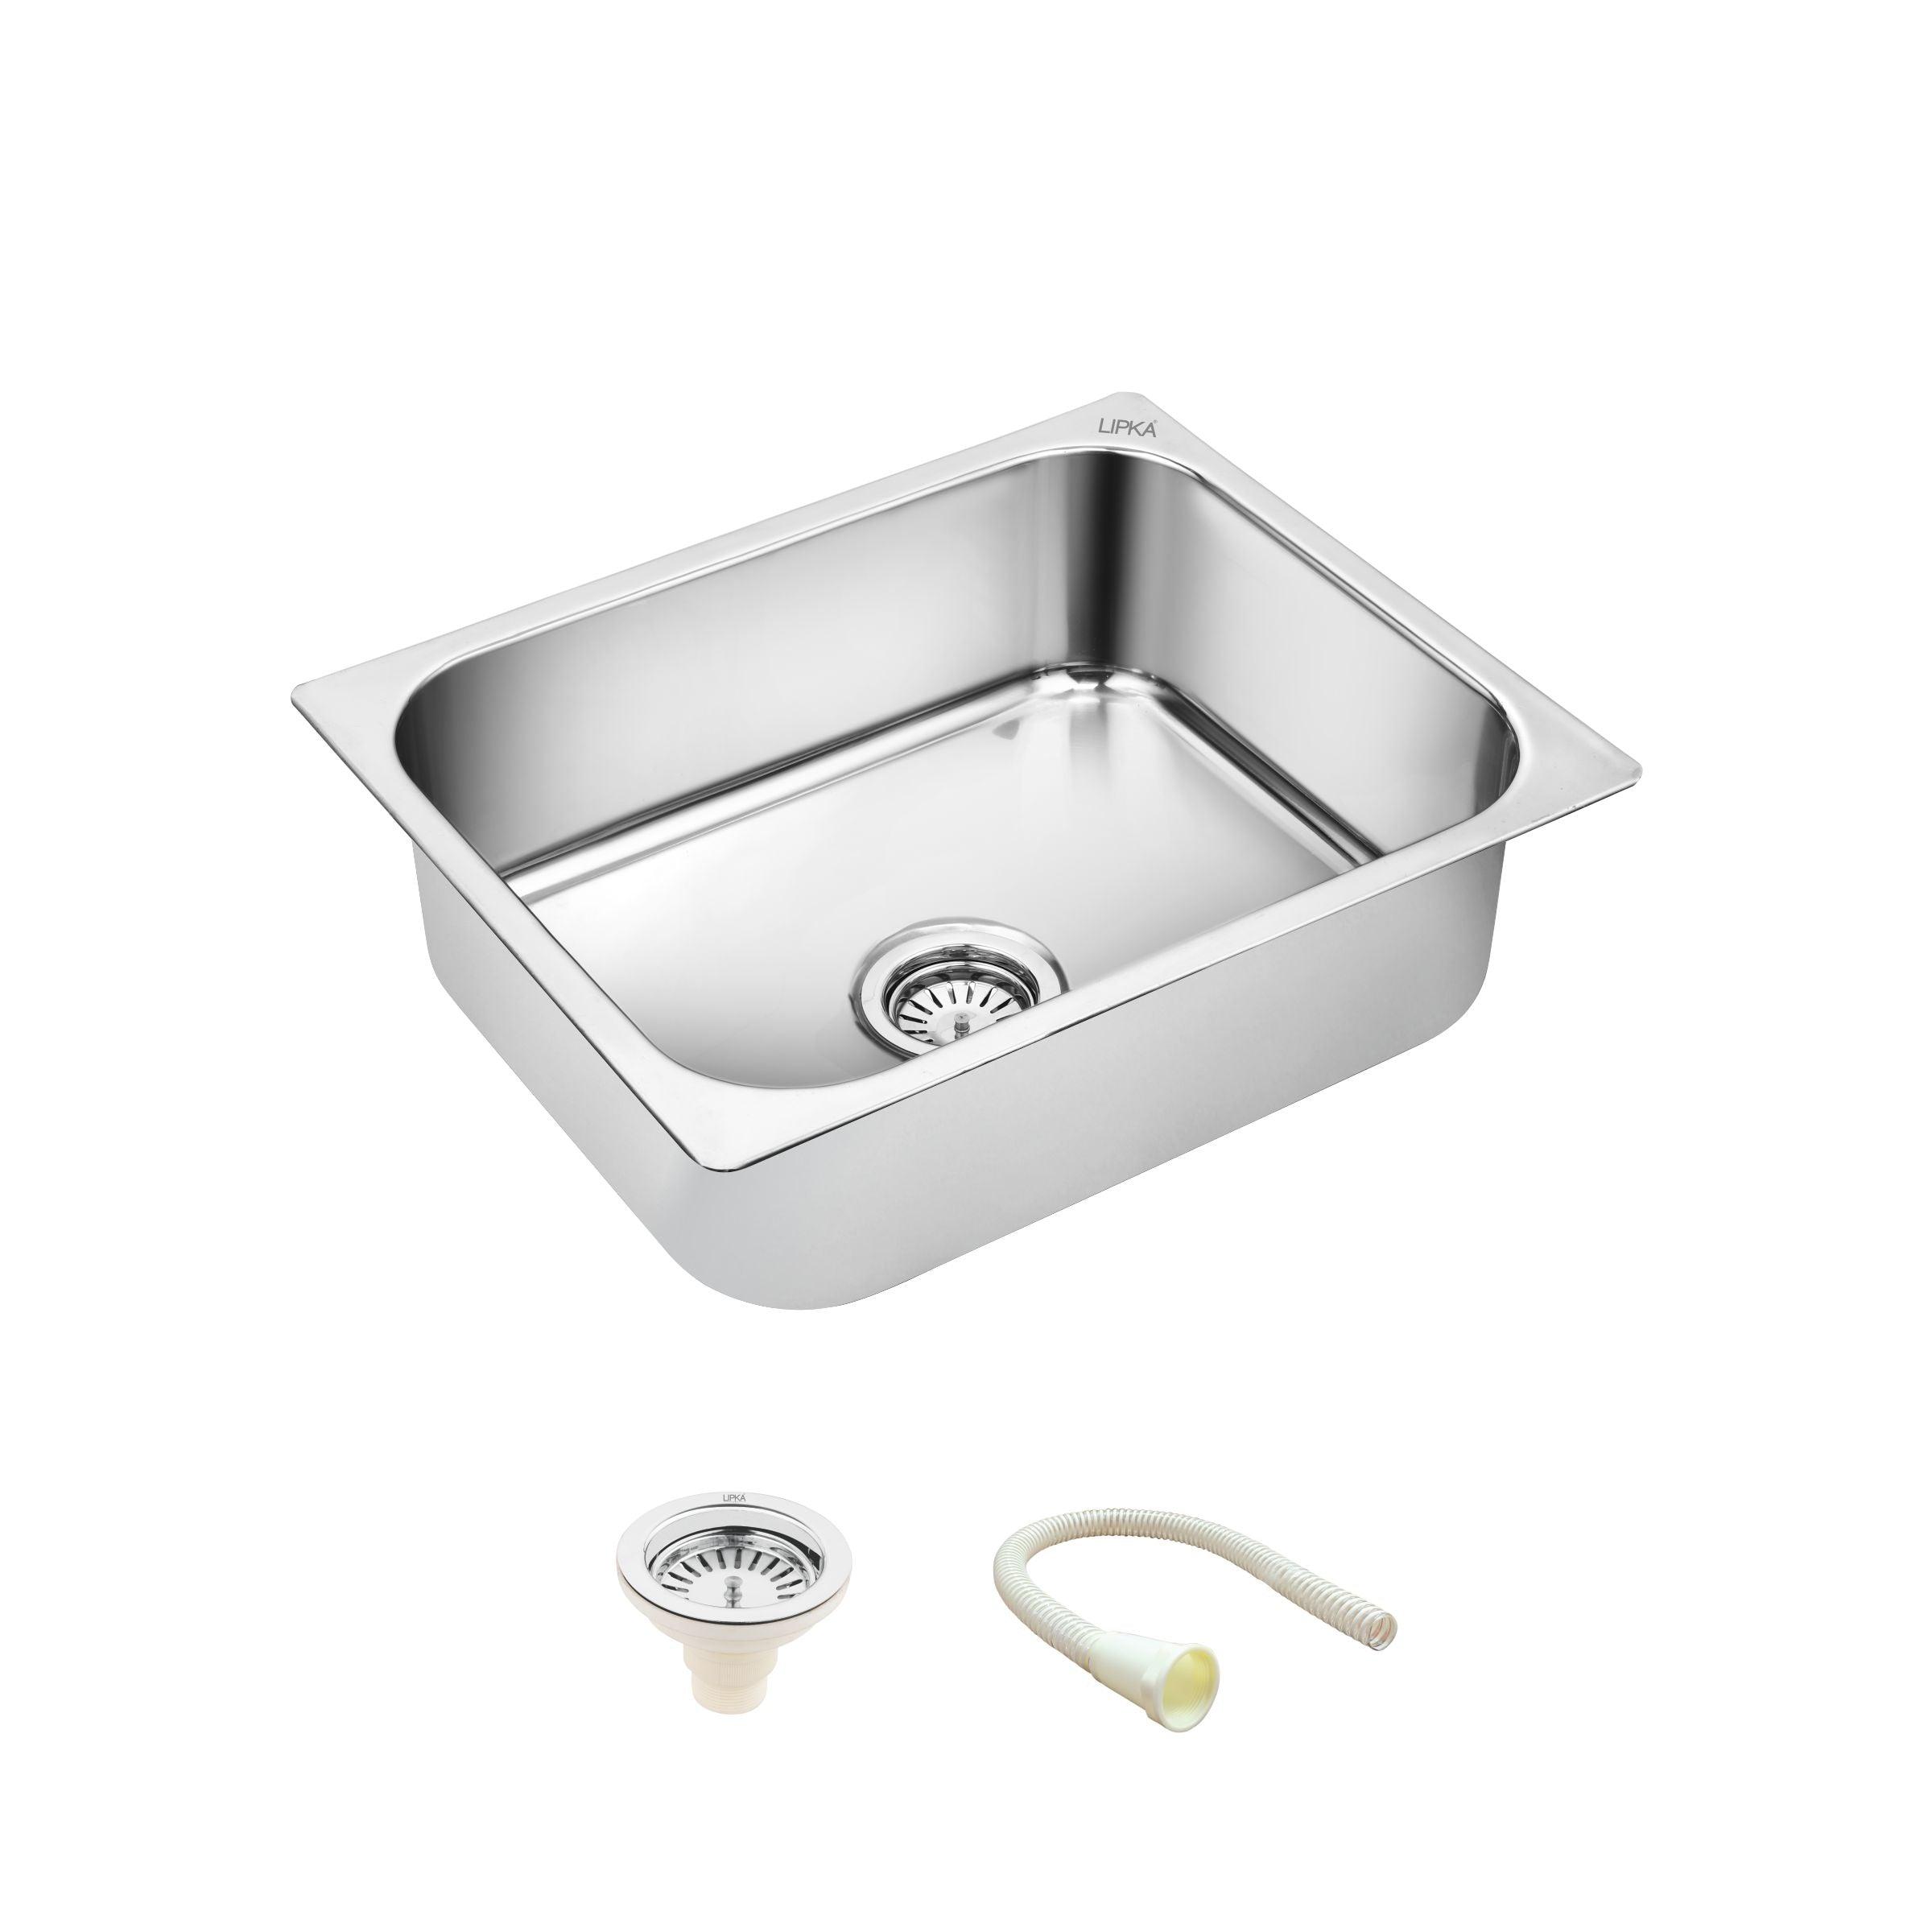 Square Single Bowl 304-Grade Kitchen Sink (21 x 18 x 8 Inches) - LIPKA - Lipka Home